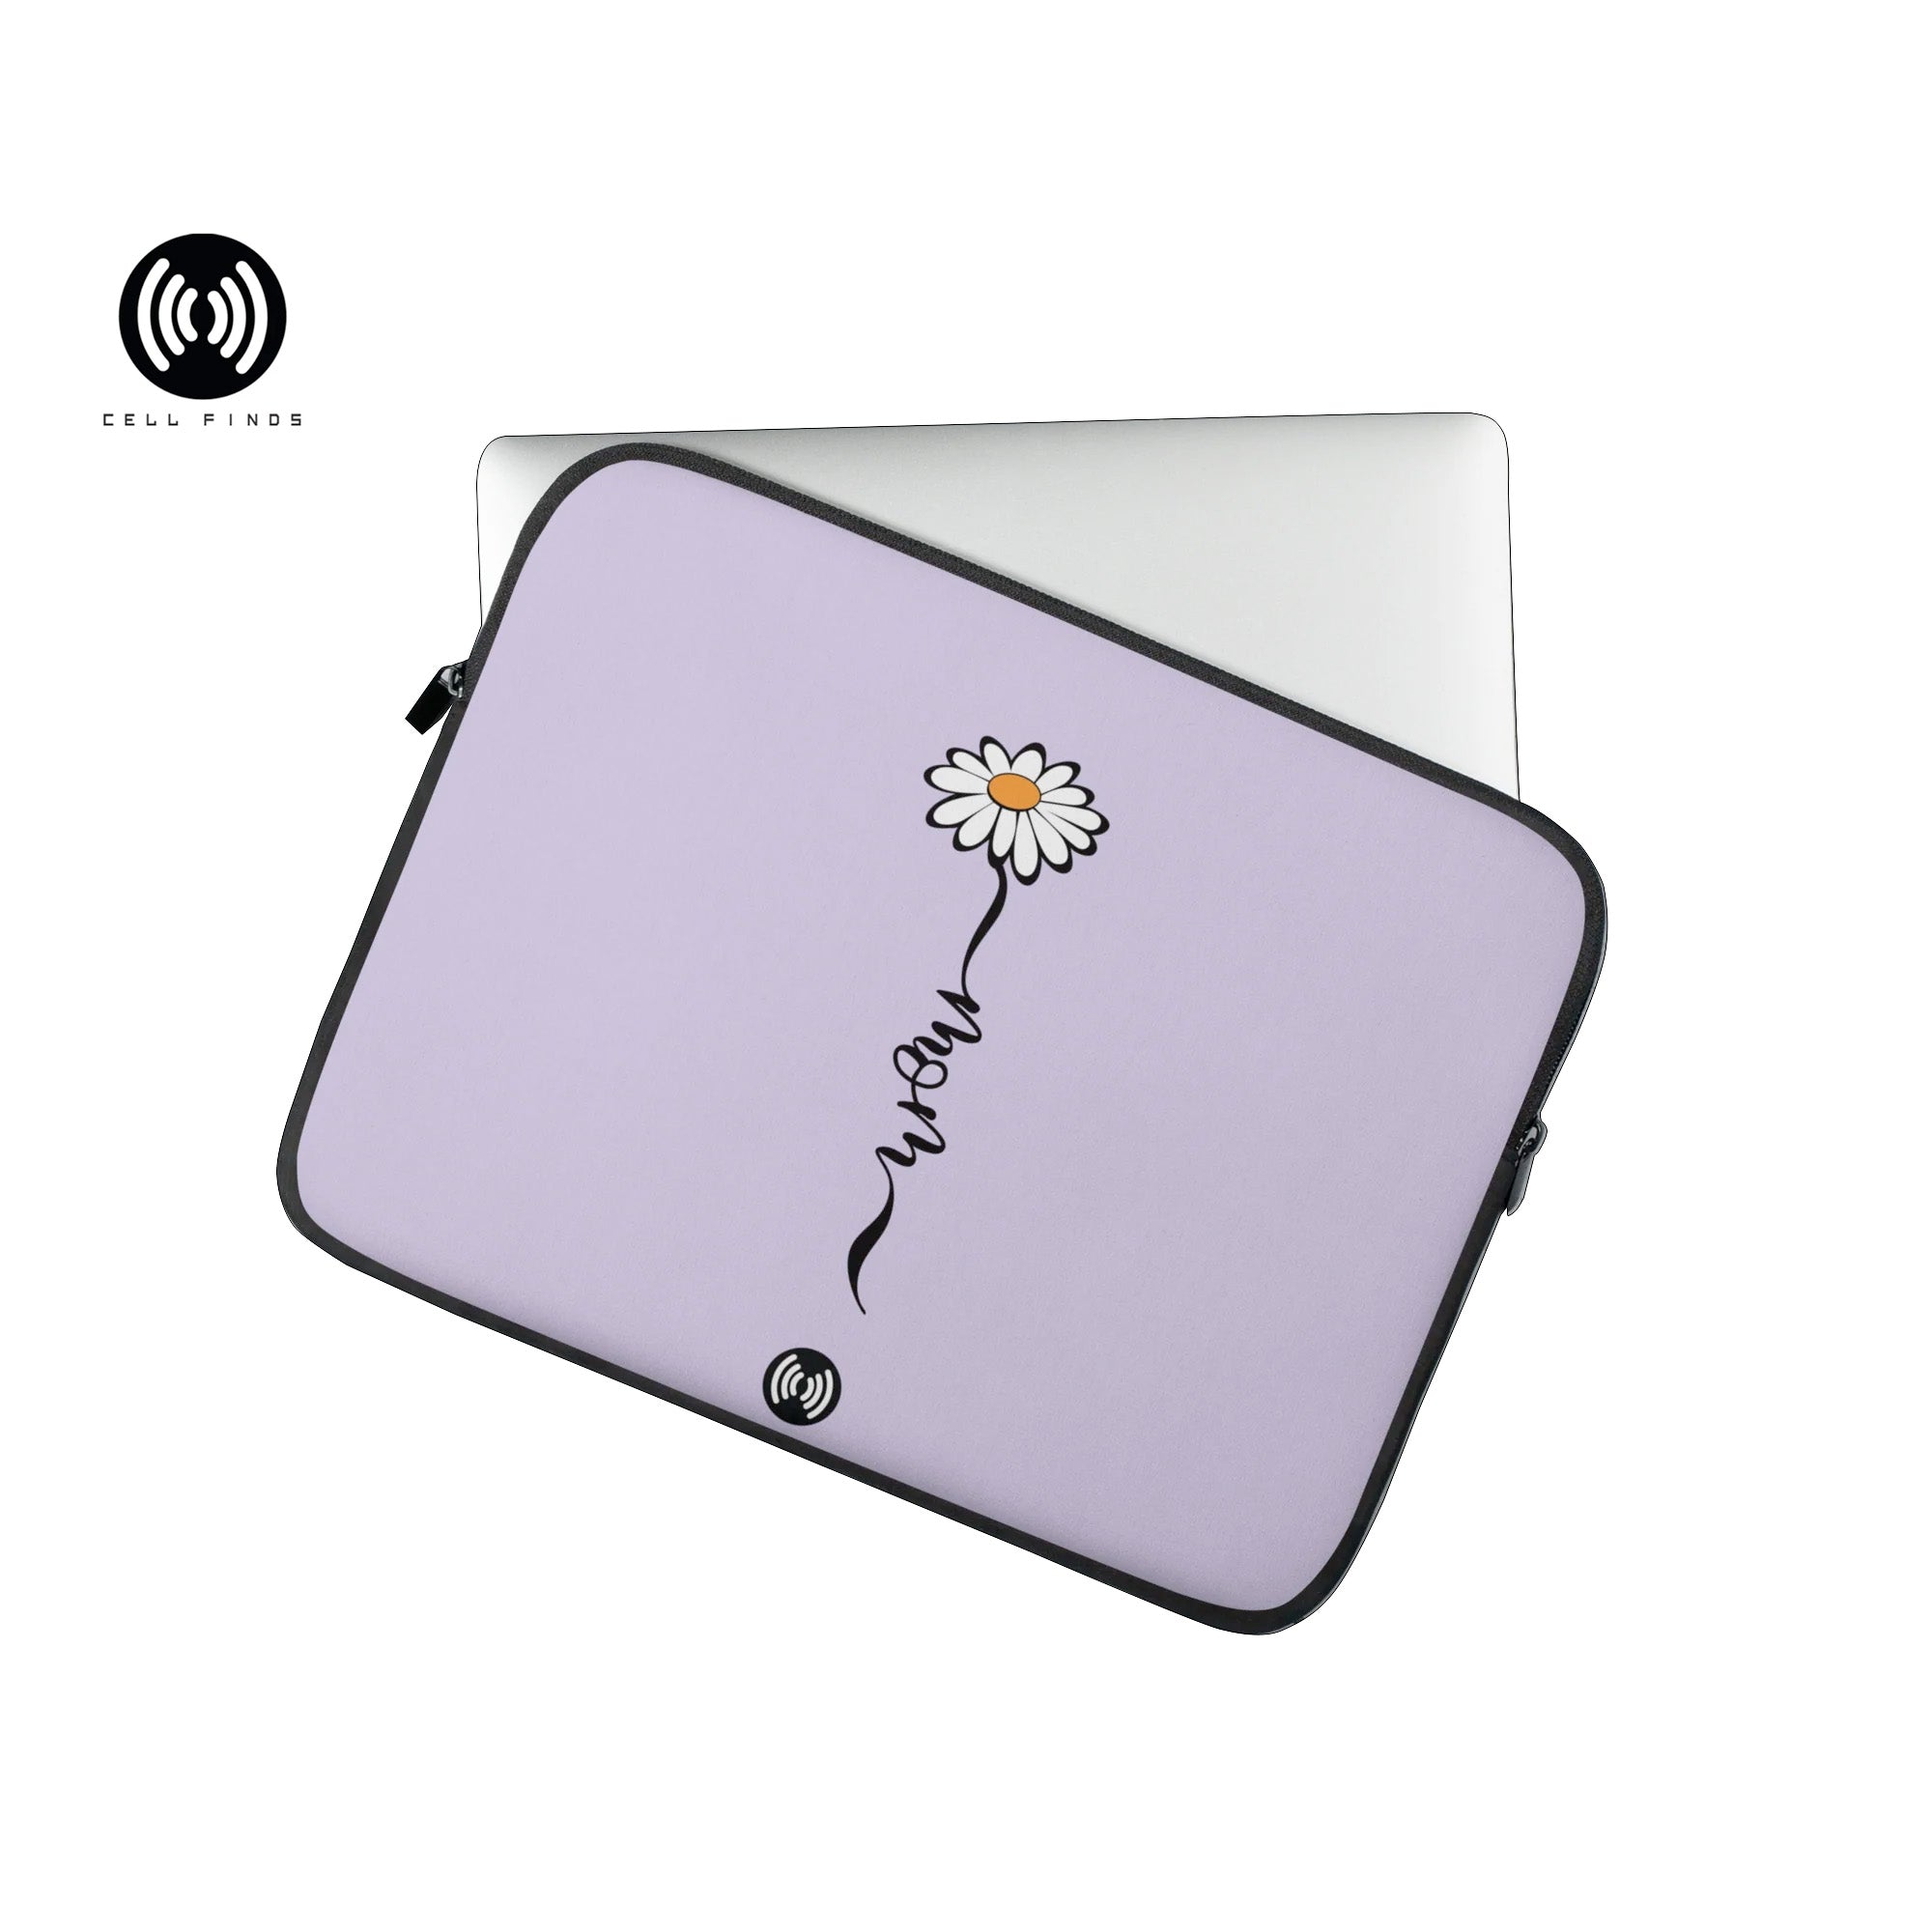 Cute Mom Laptop Sleeve with Daisy Flower